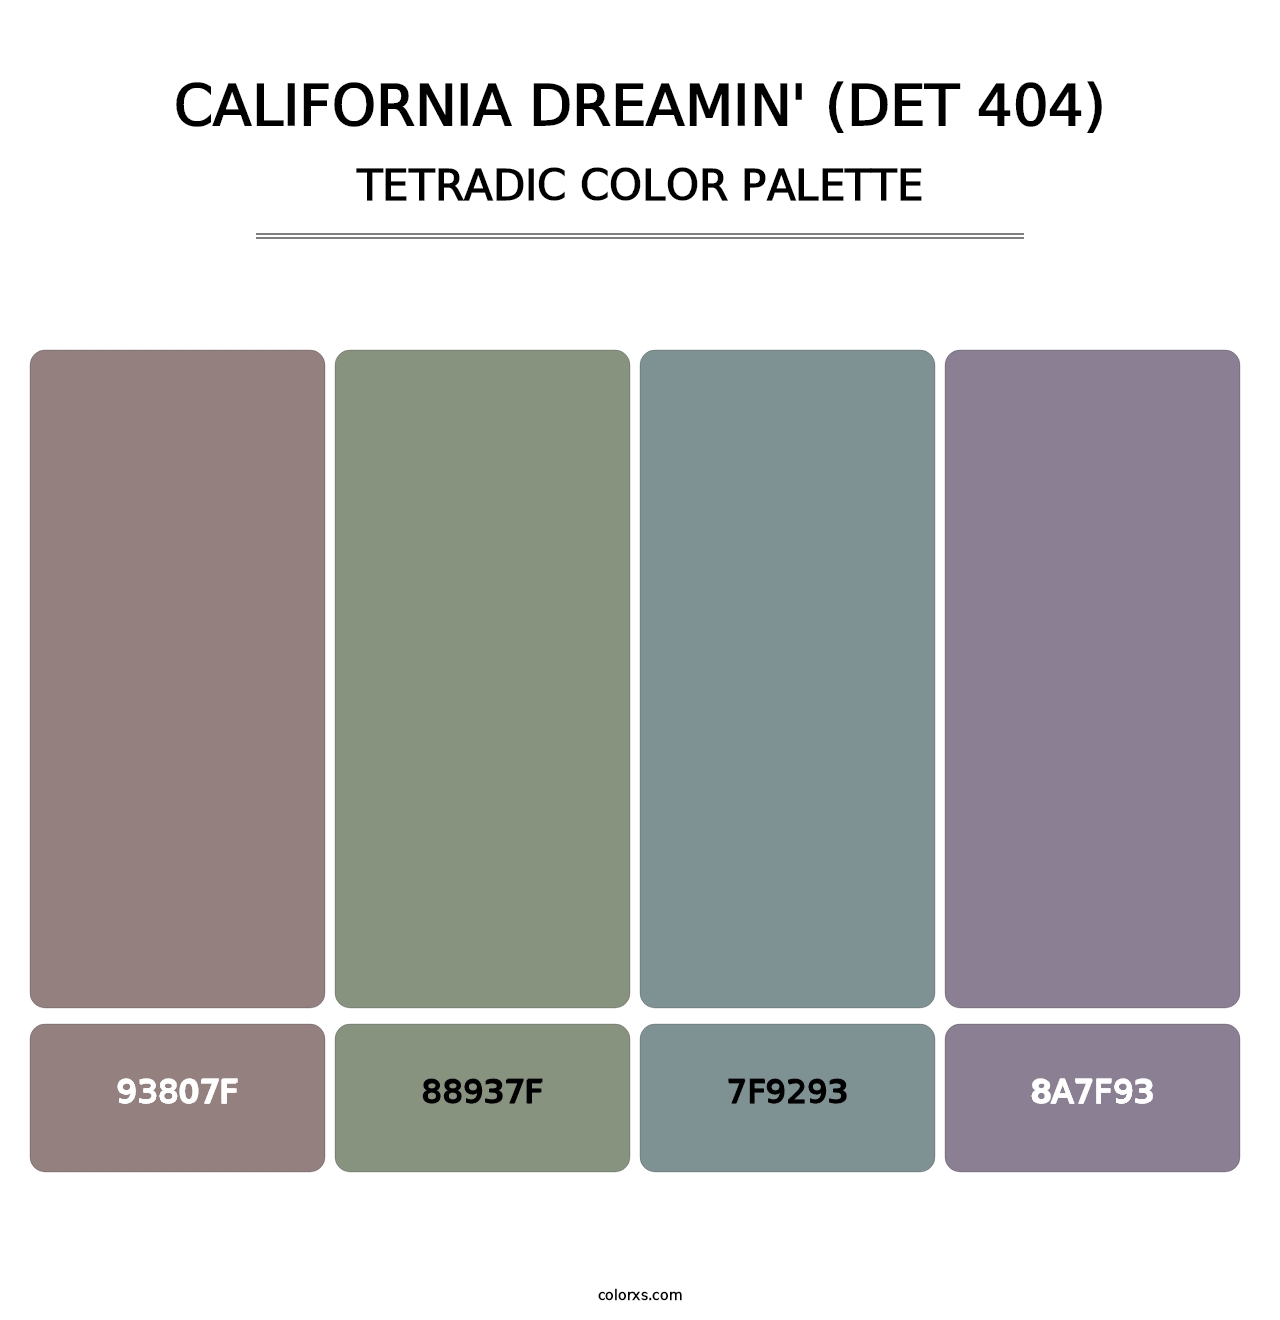 California Dreamin' (DET 404) - Tetradic Color Palette